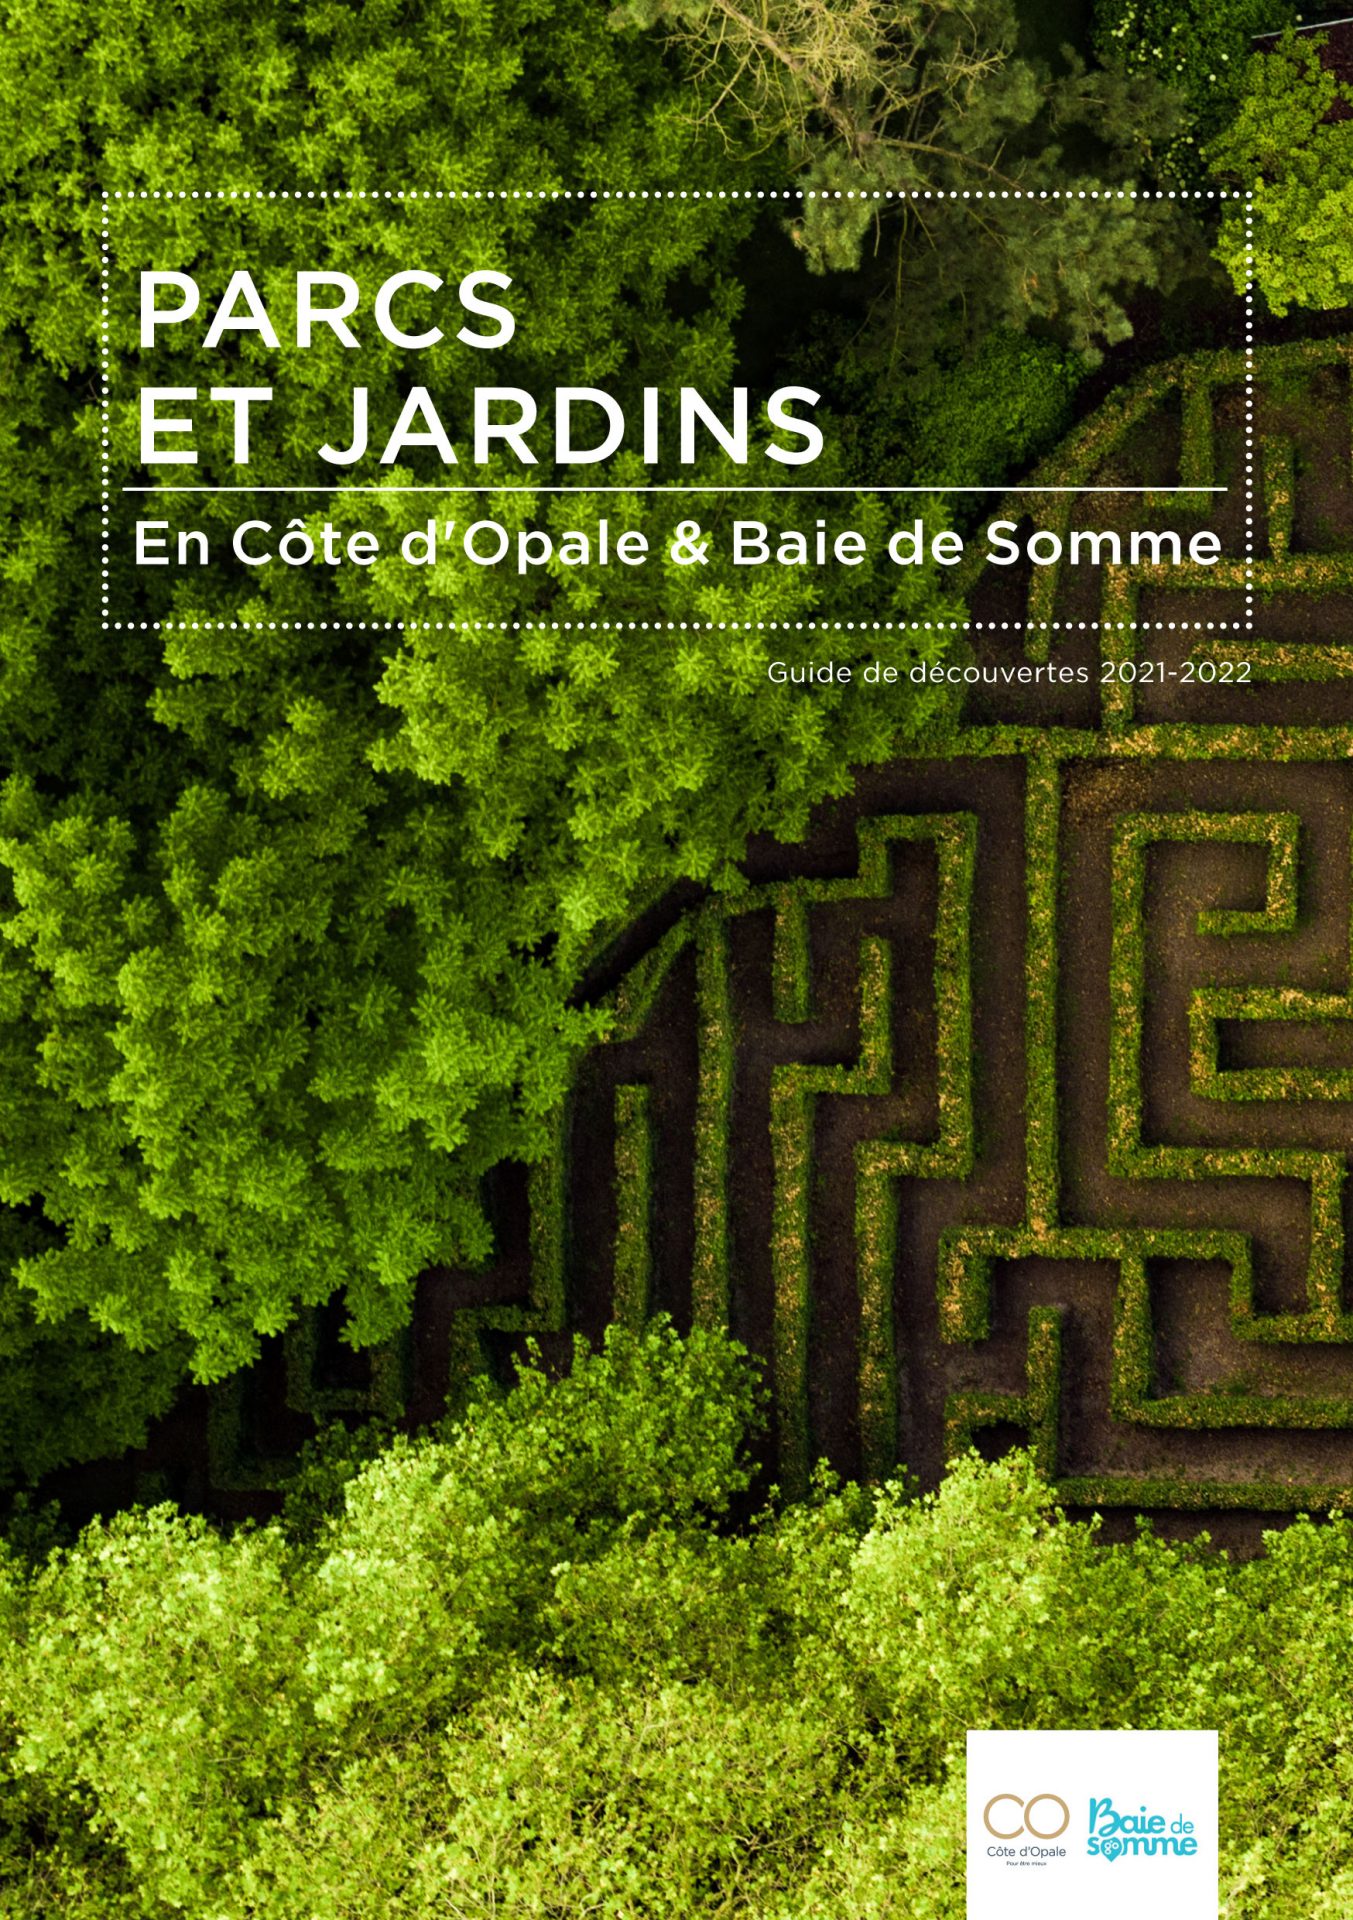 Parcs et jardins